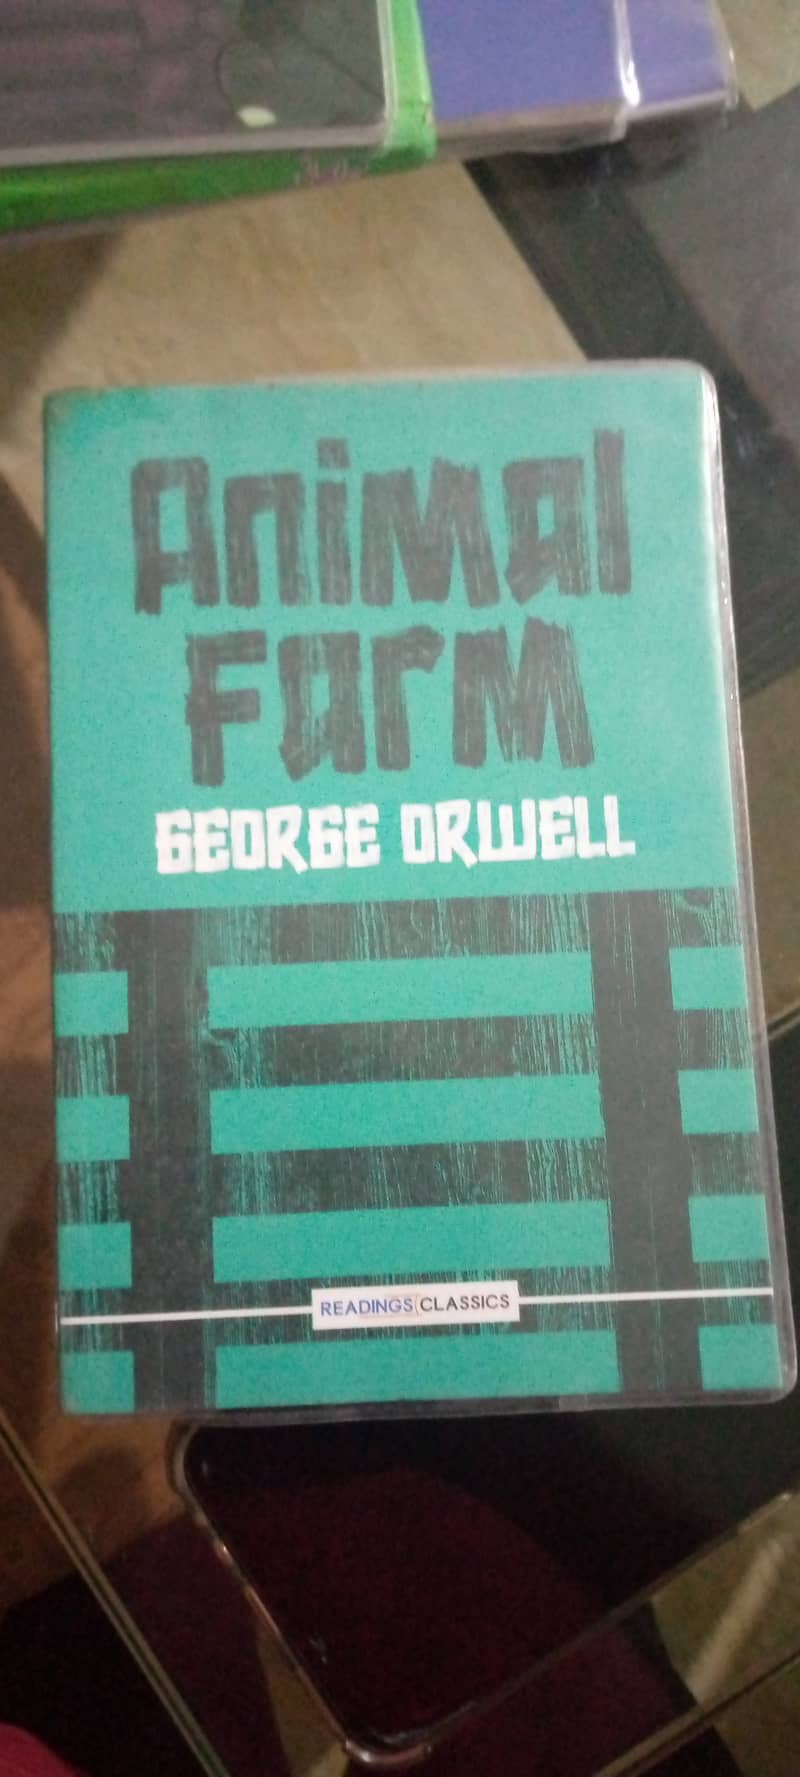 Animal farm by George Orwell 0